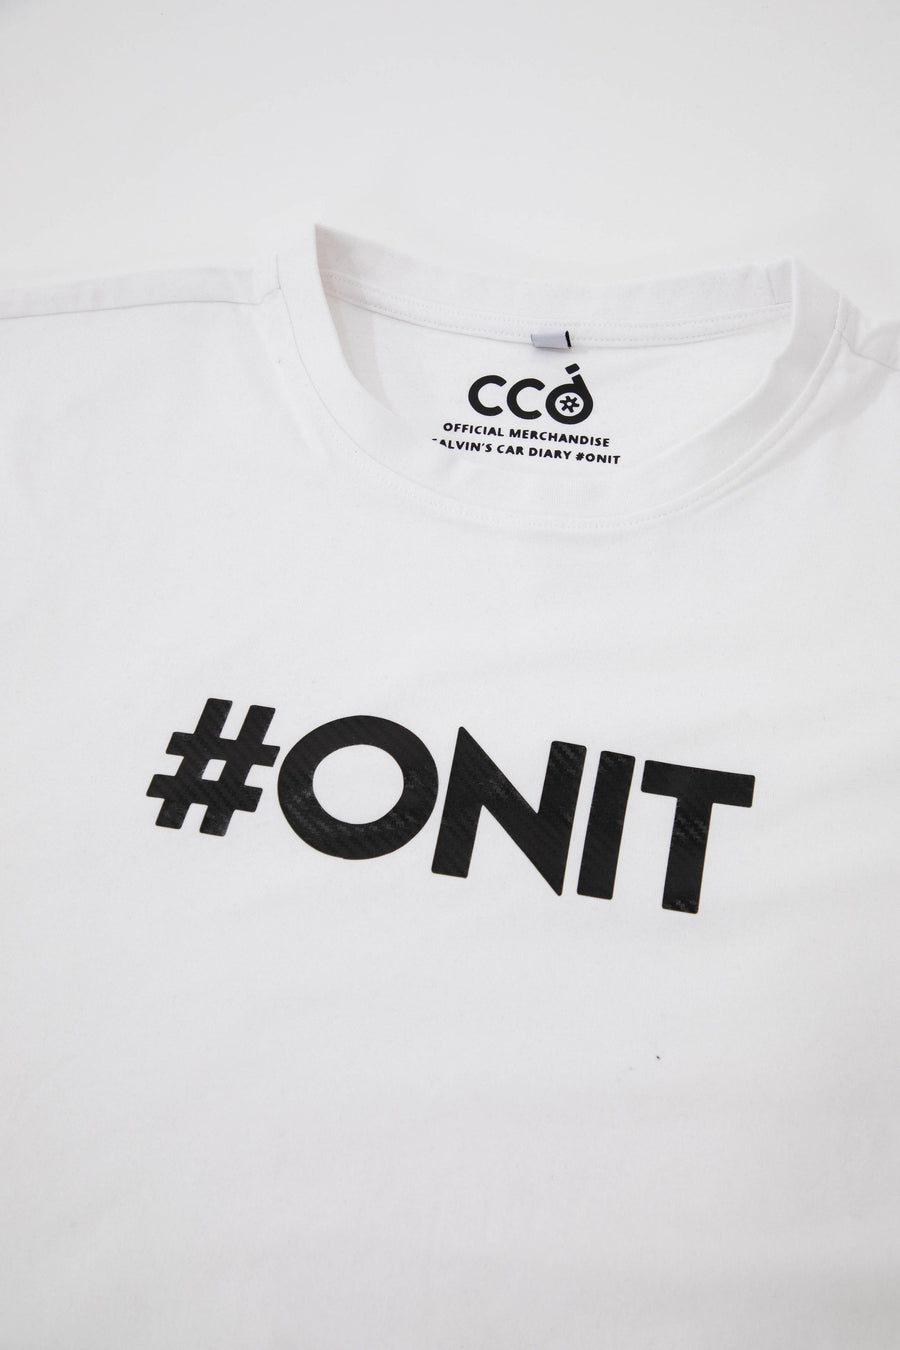 Carbon Fibre T-Shirt - White